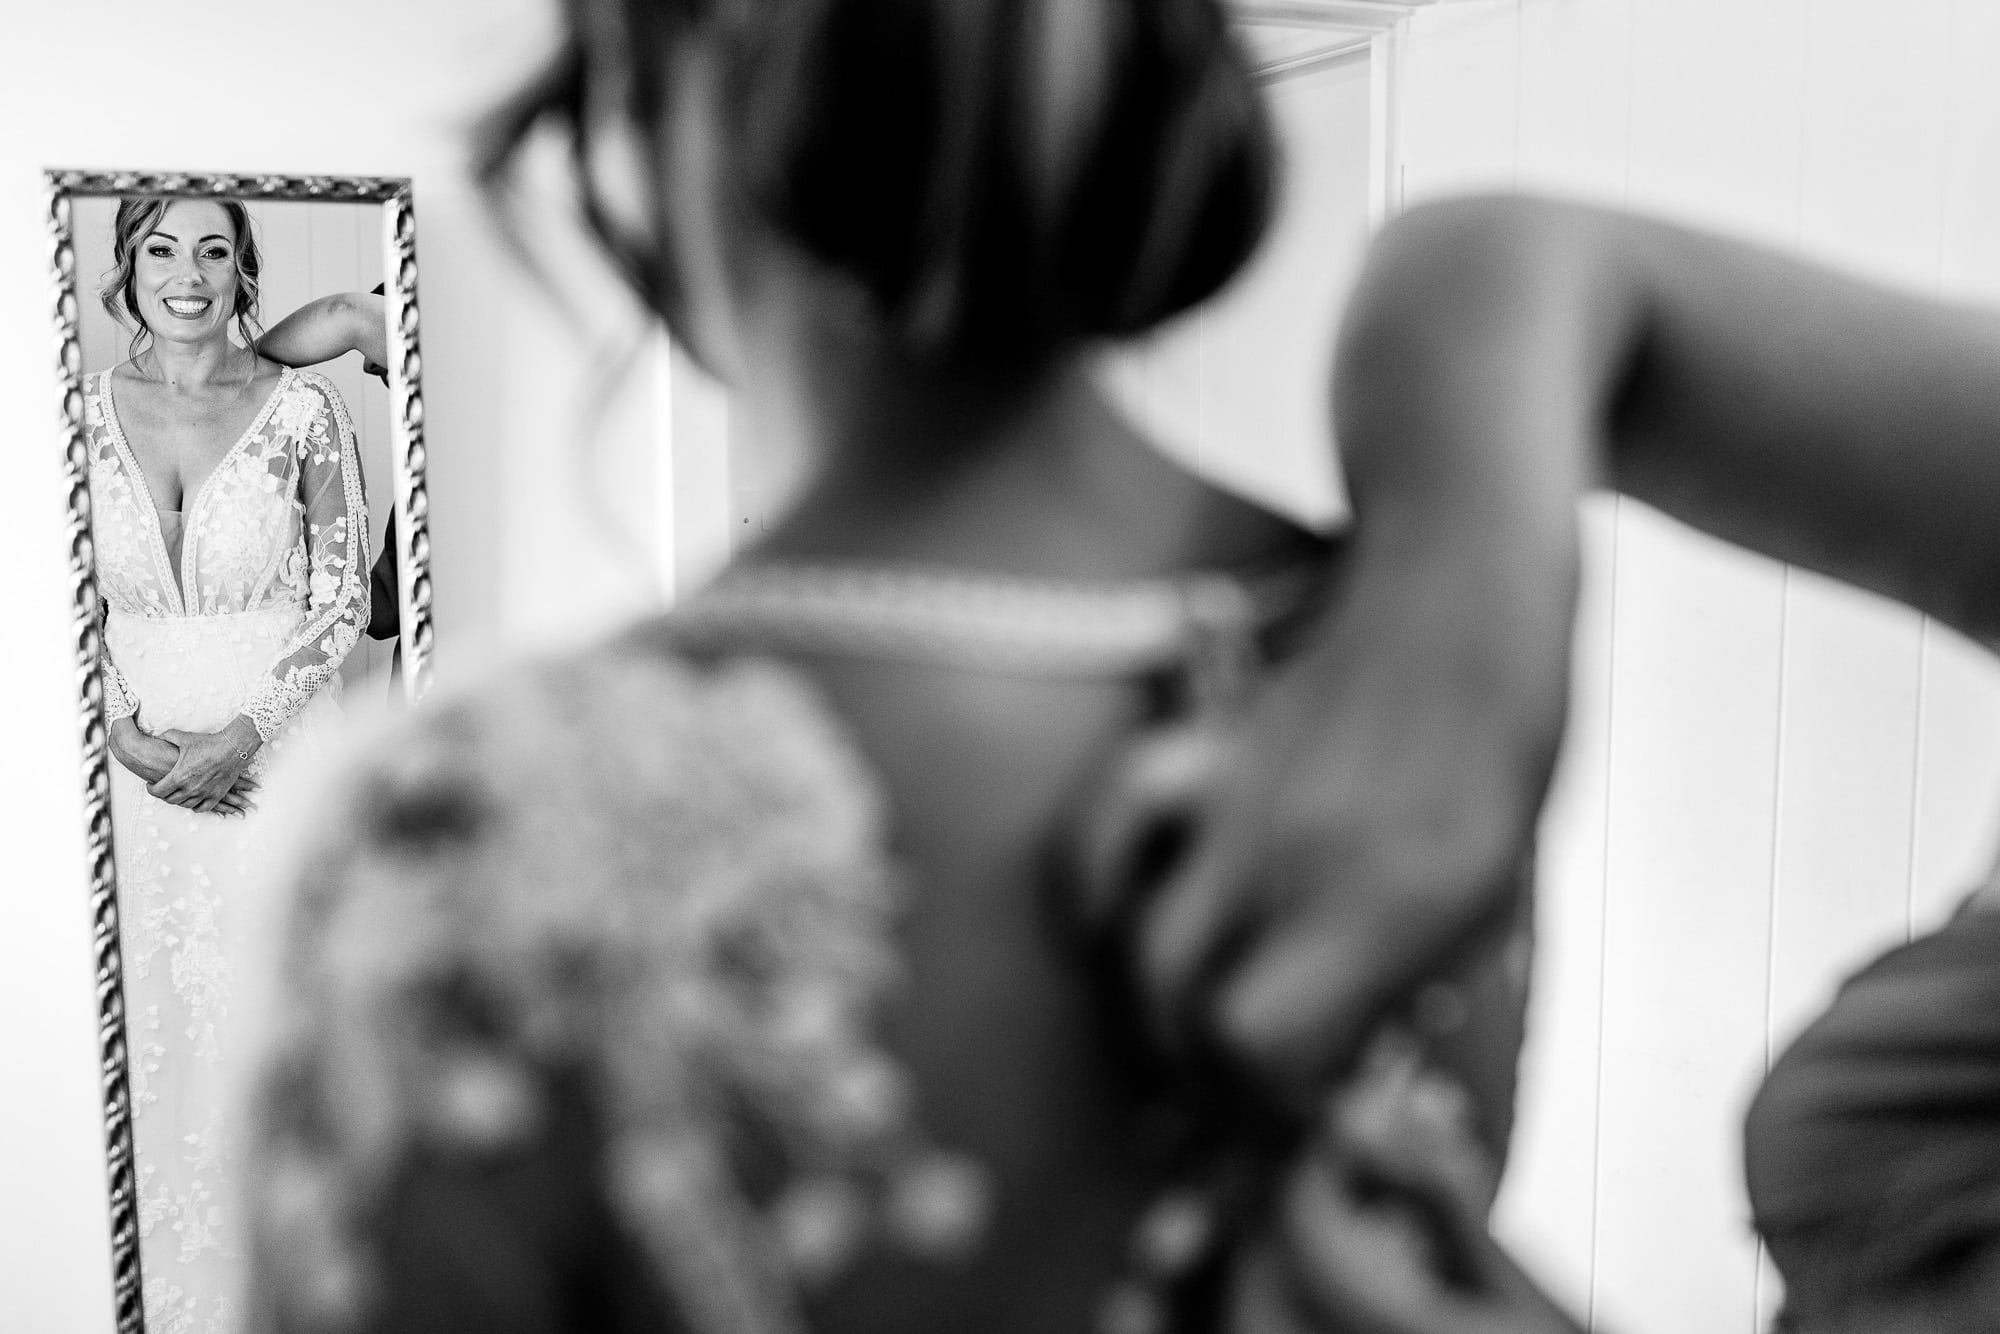 bride reflection in mirror